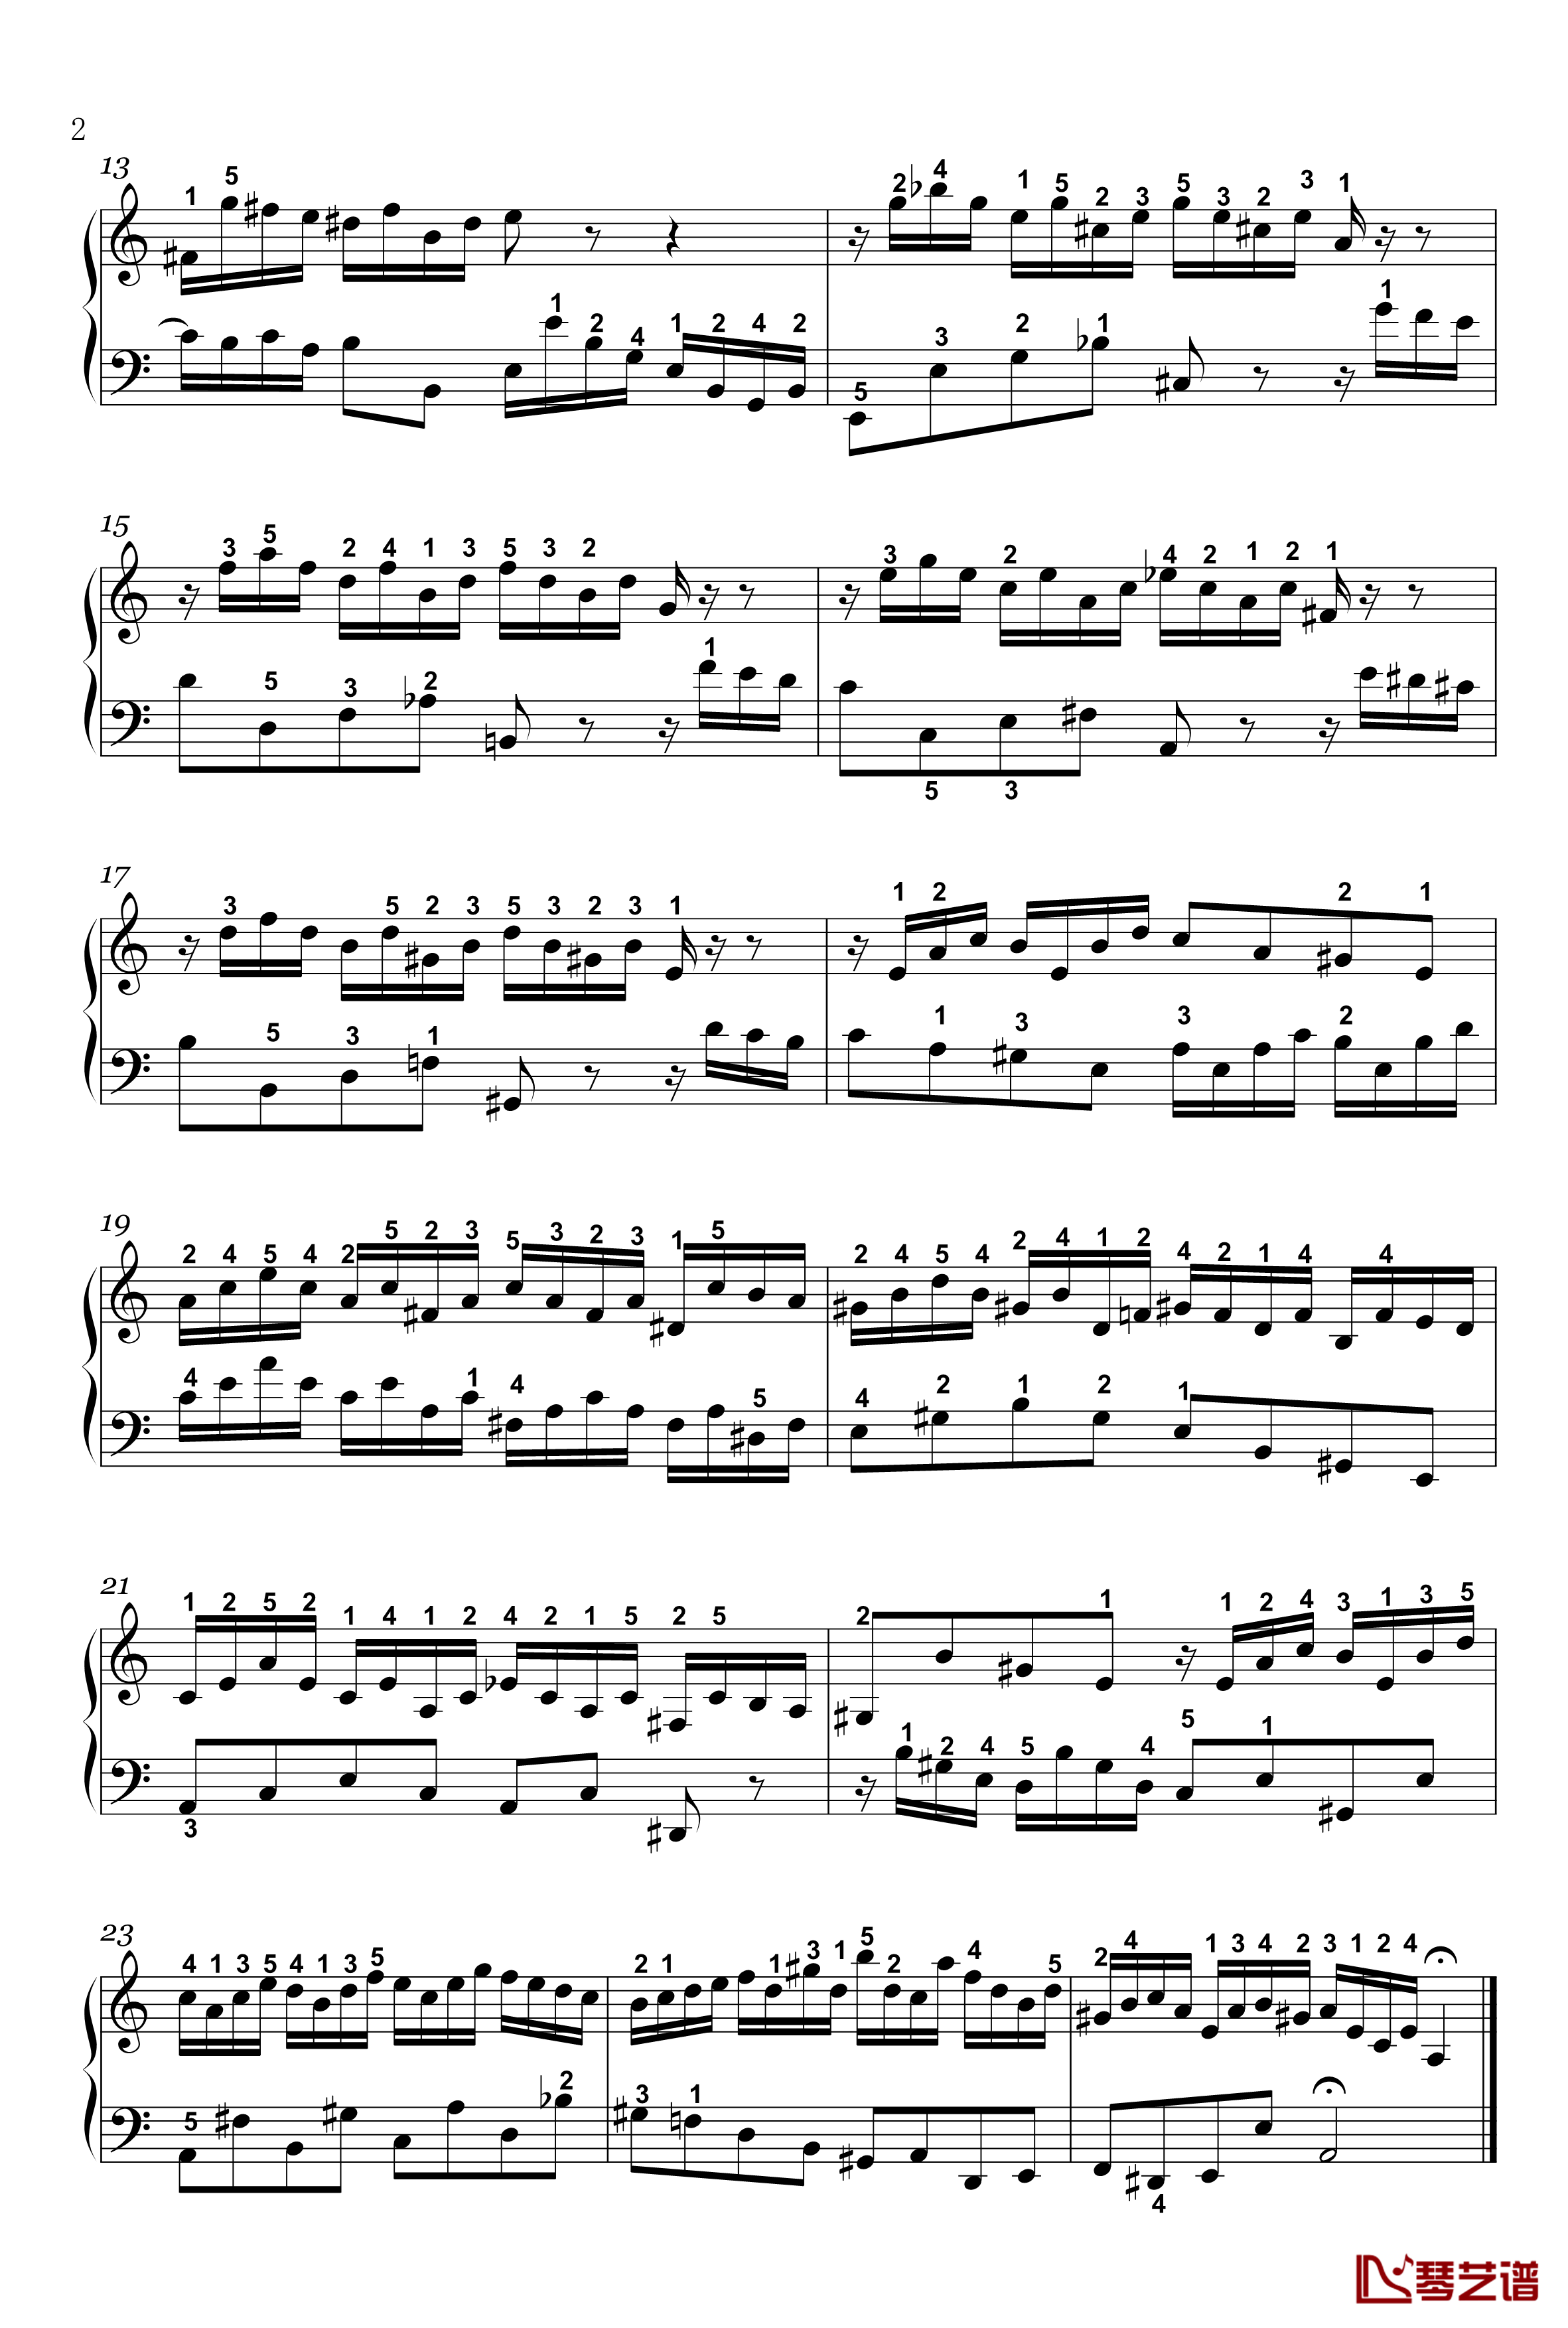 二部创意曲钢琴谱-13-bwv784-详细指法-巴赫-P.E.Bach2